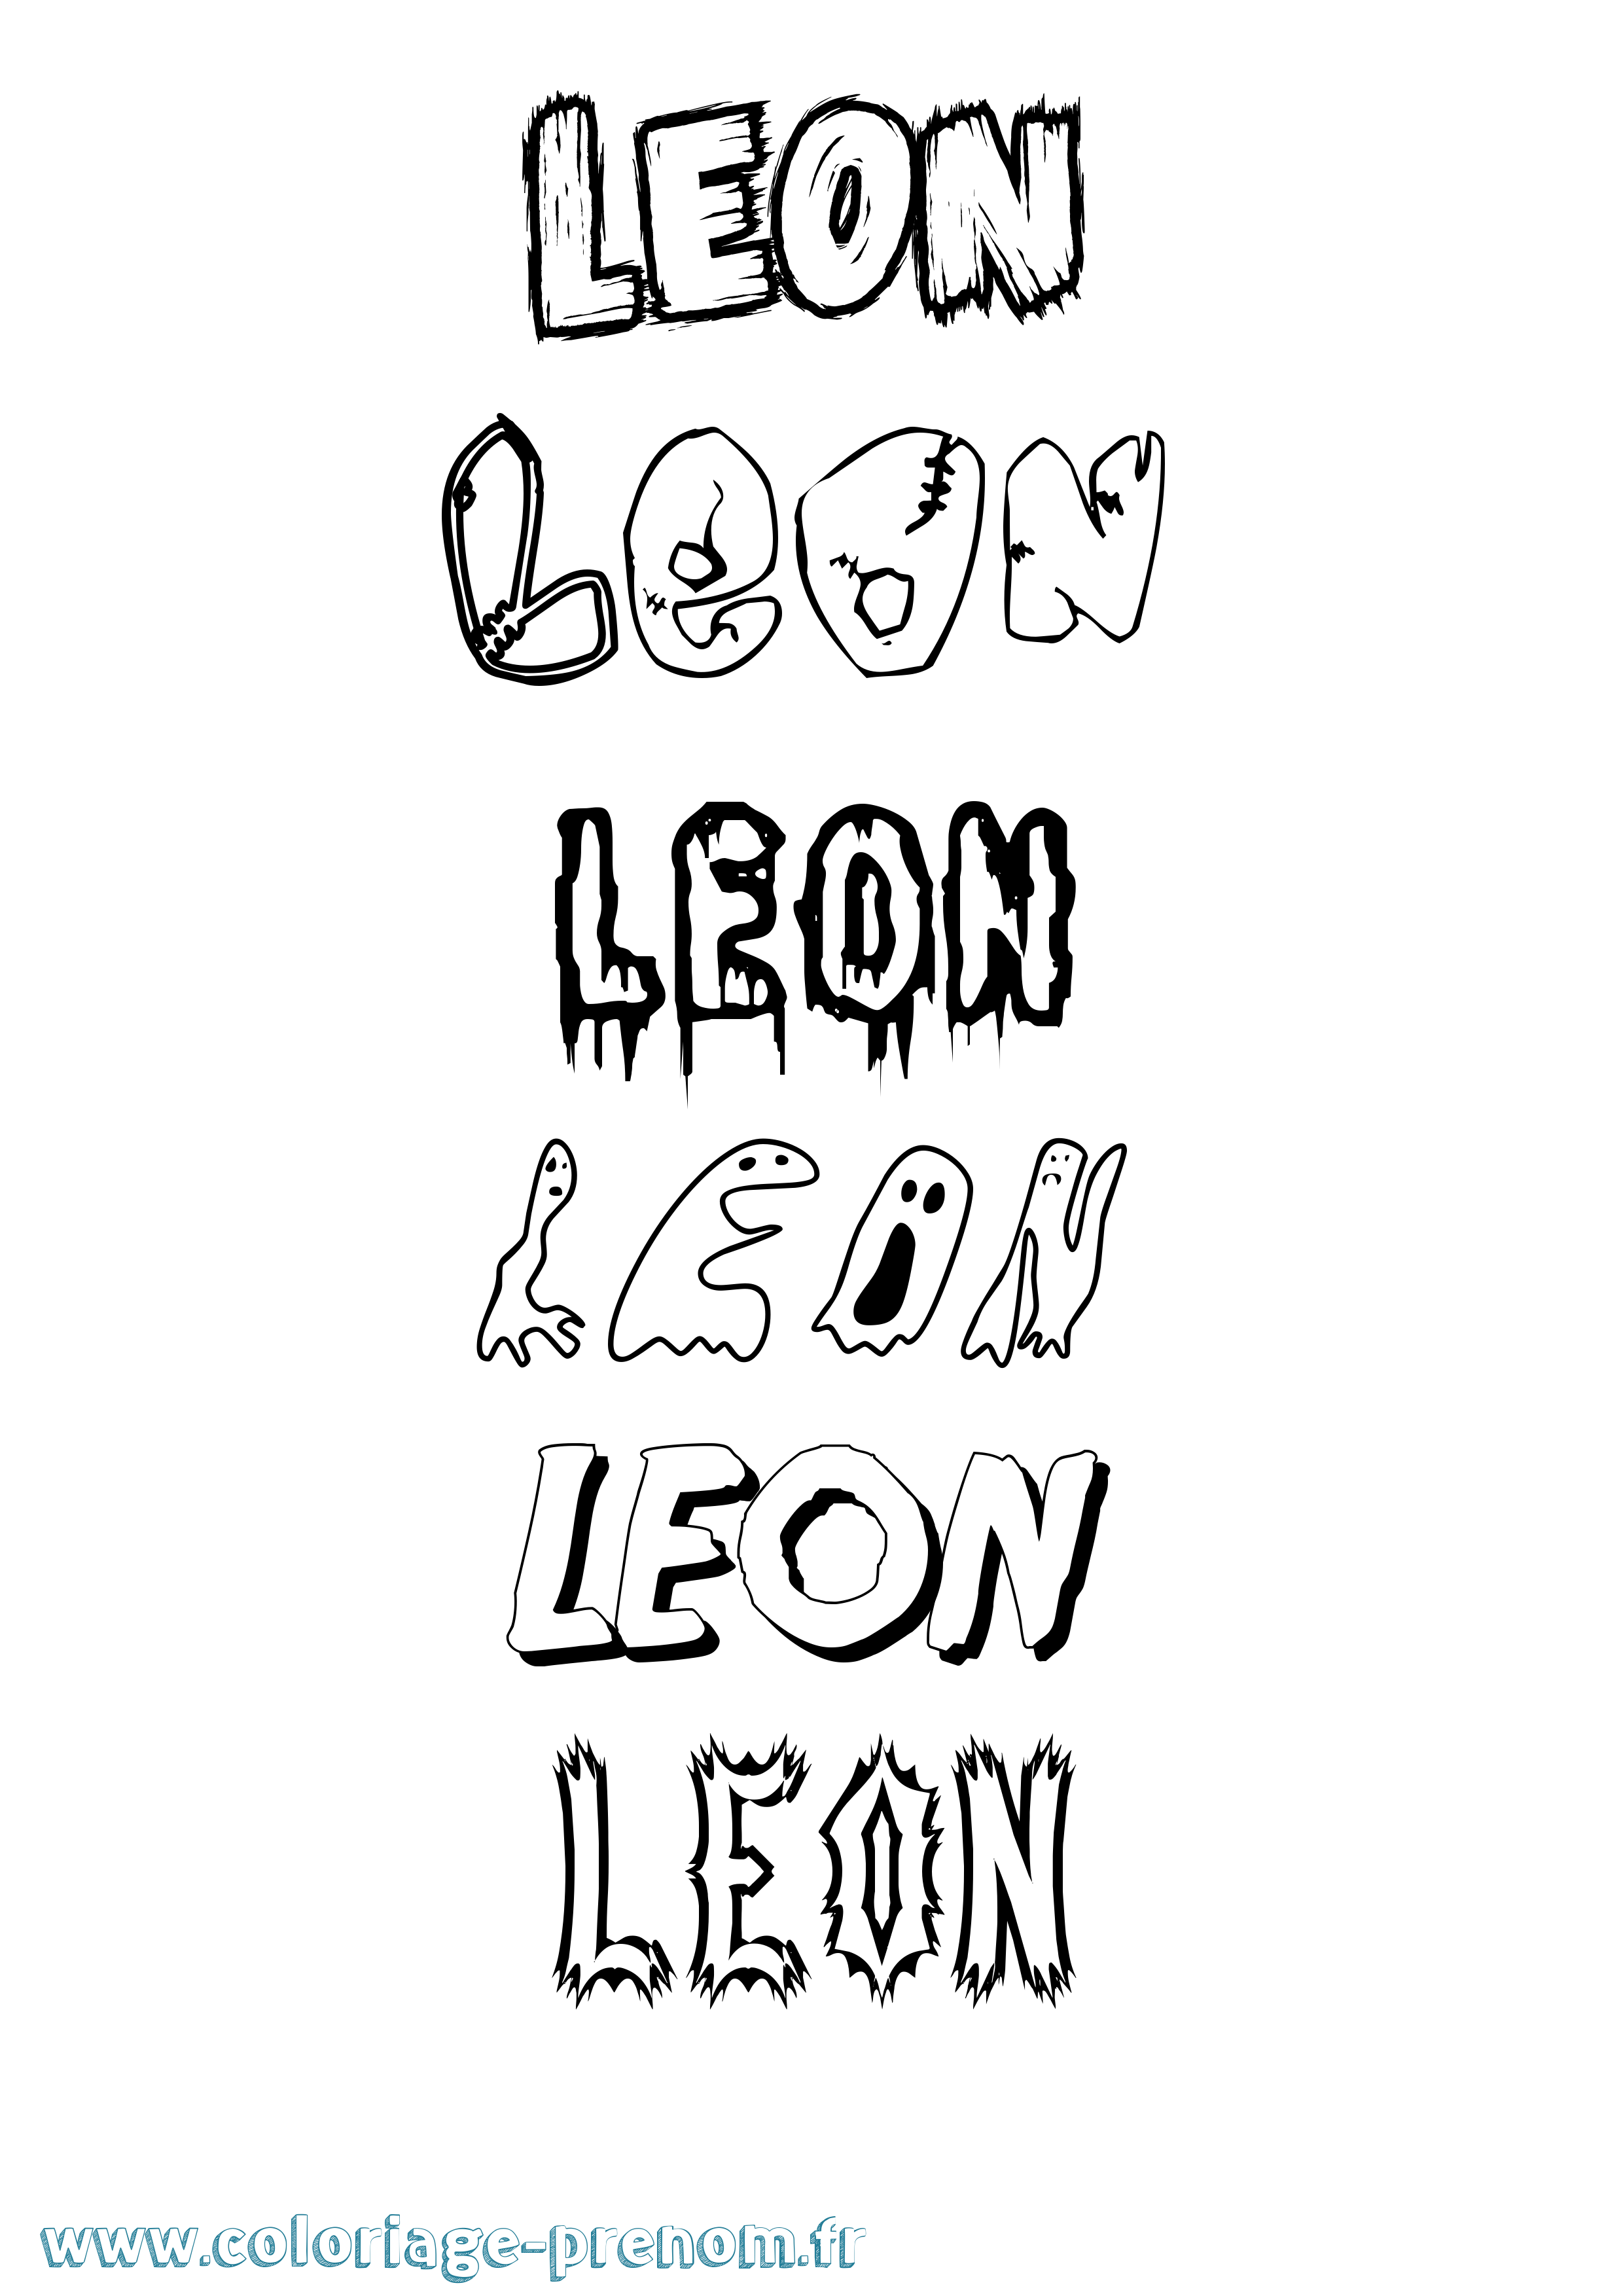 Coloriage prénom Leon Frisson